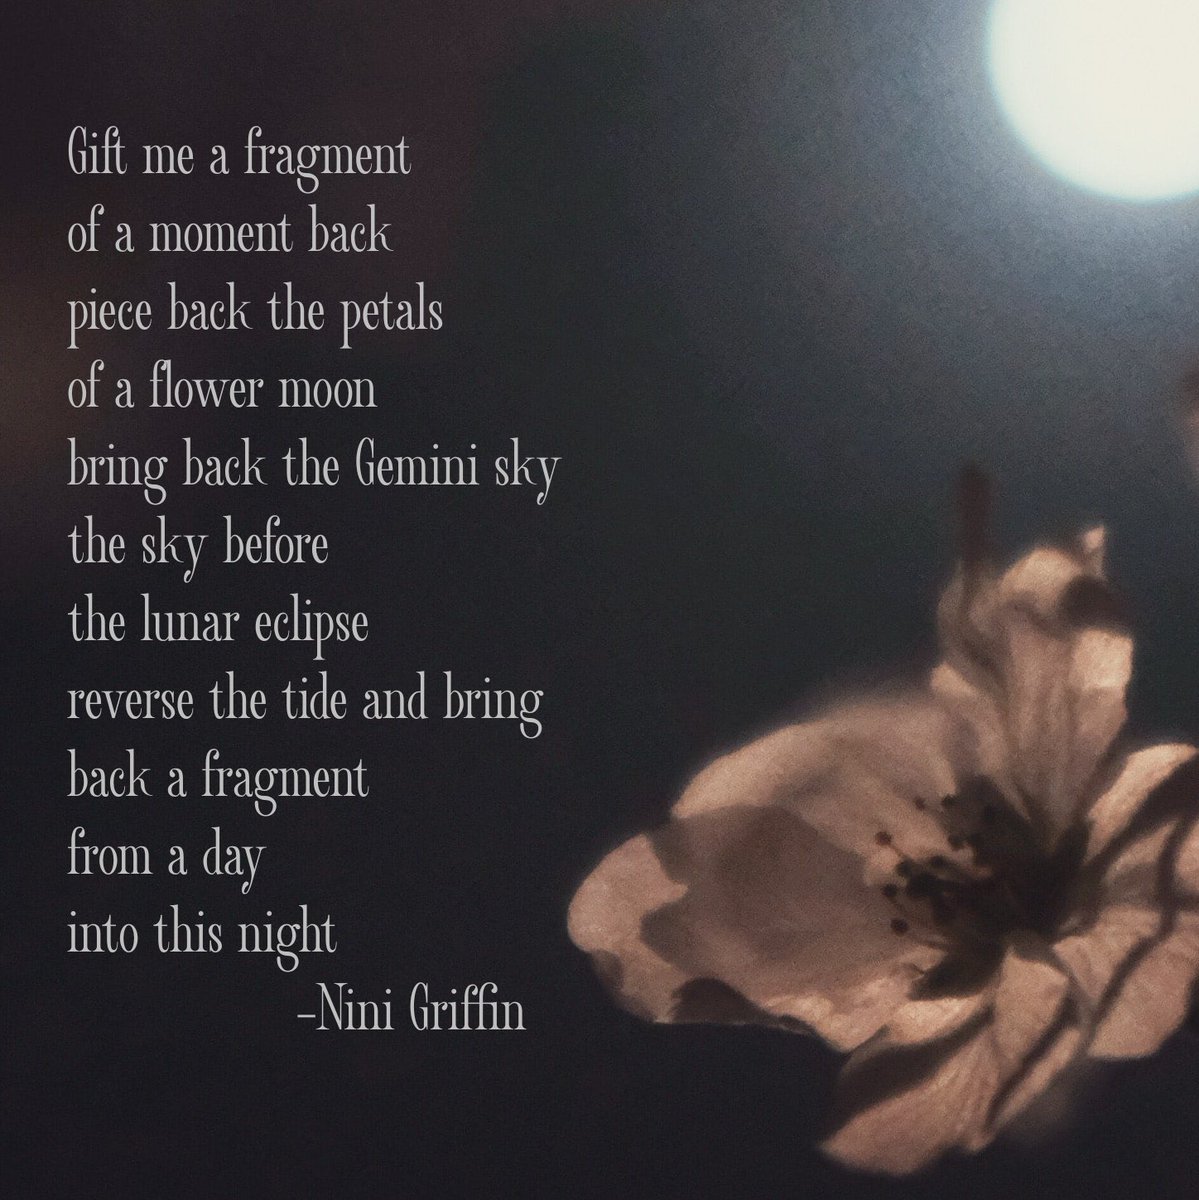 Fragments -Nini Griffin #poetry #writing #fragments #moments #time #turnbacktime #writingcommmunity #poetrycommunity #ireland #irishwriter #naturewriting #night #lunar